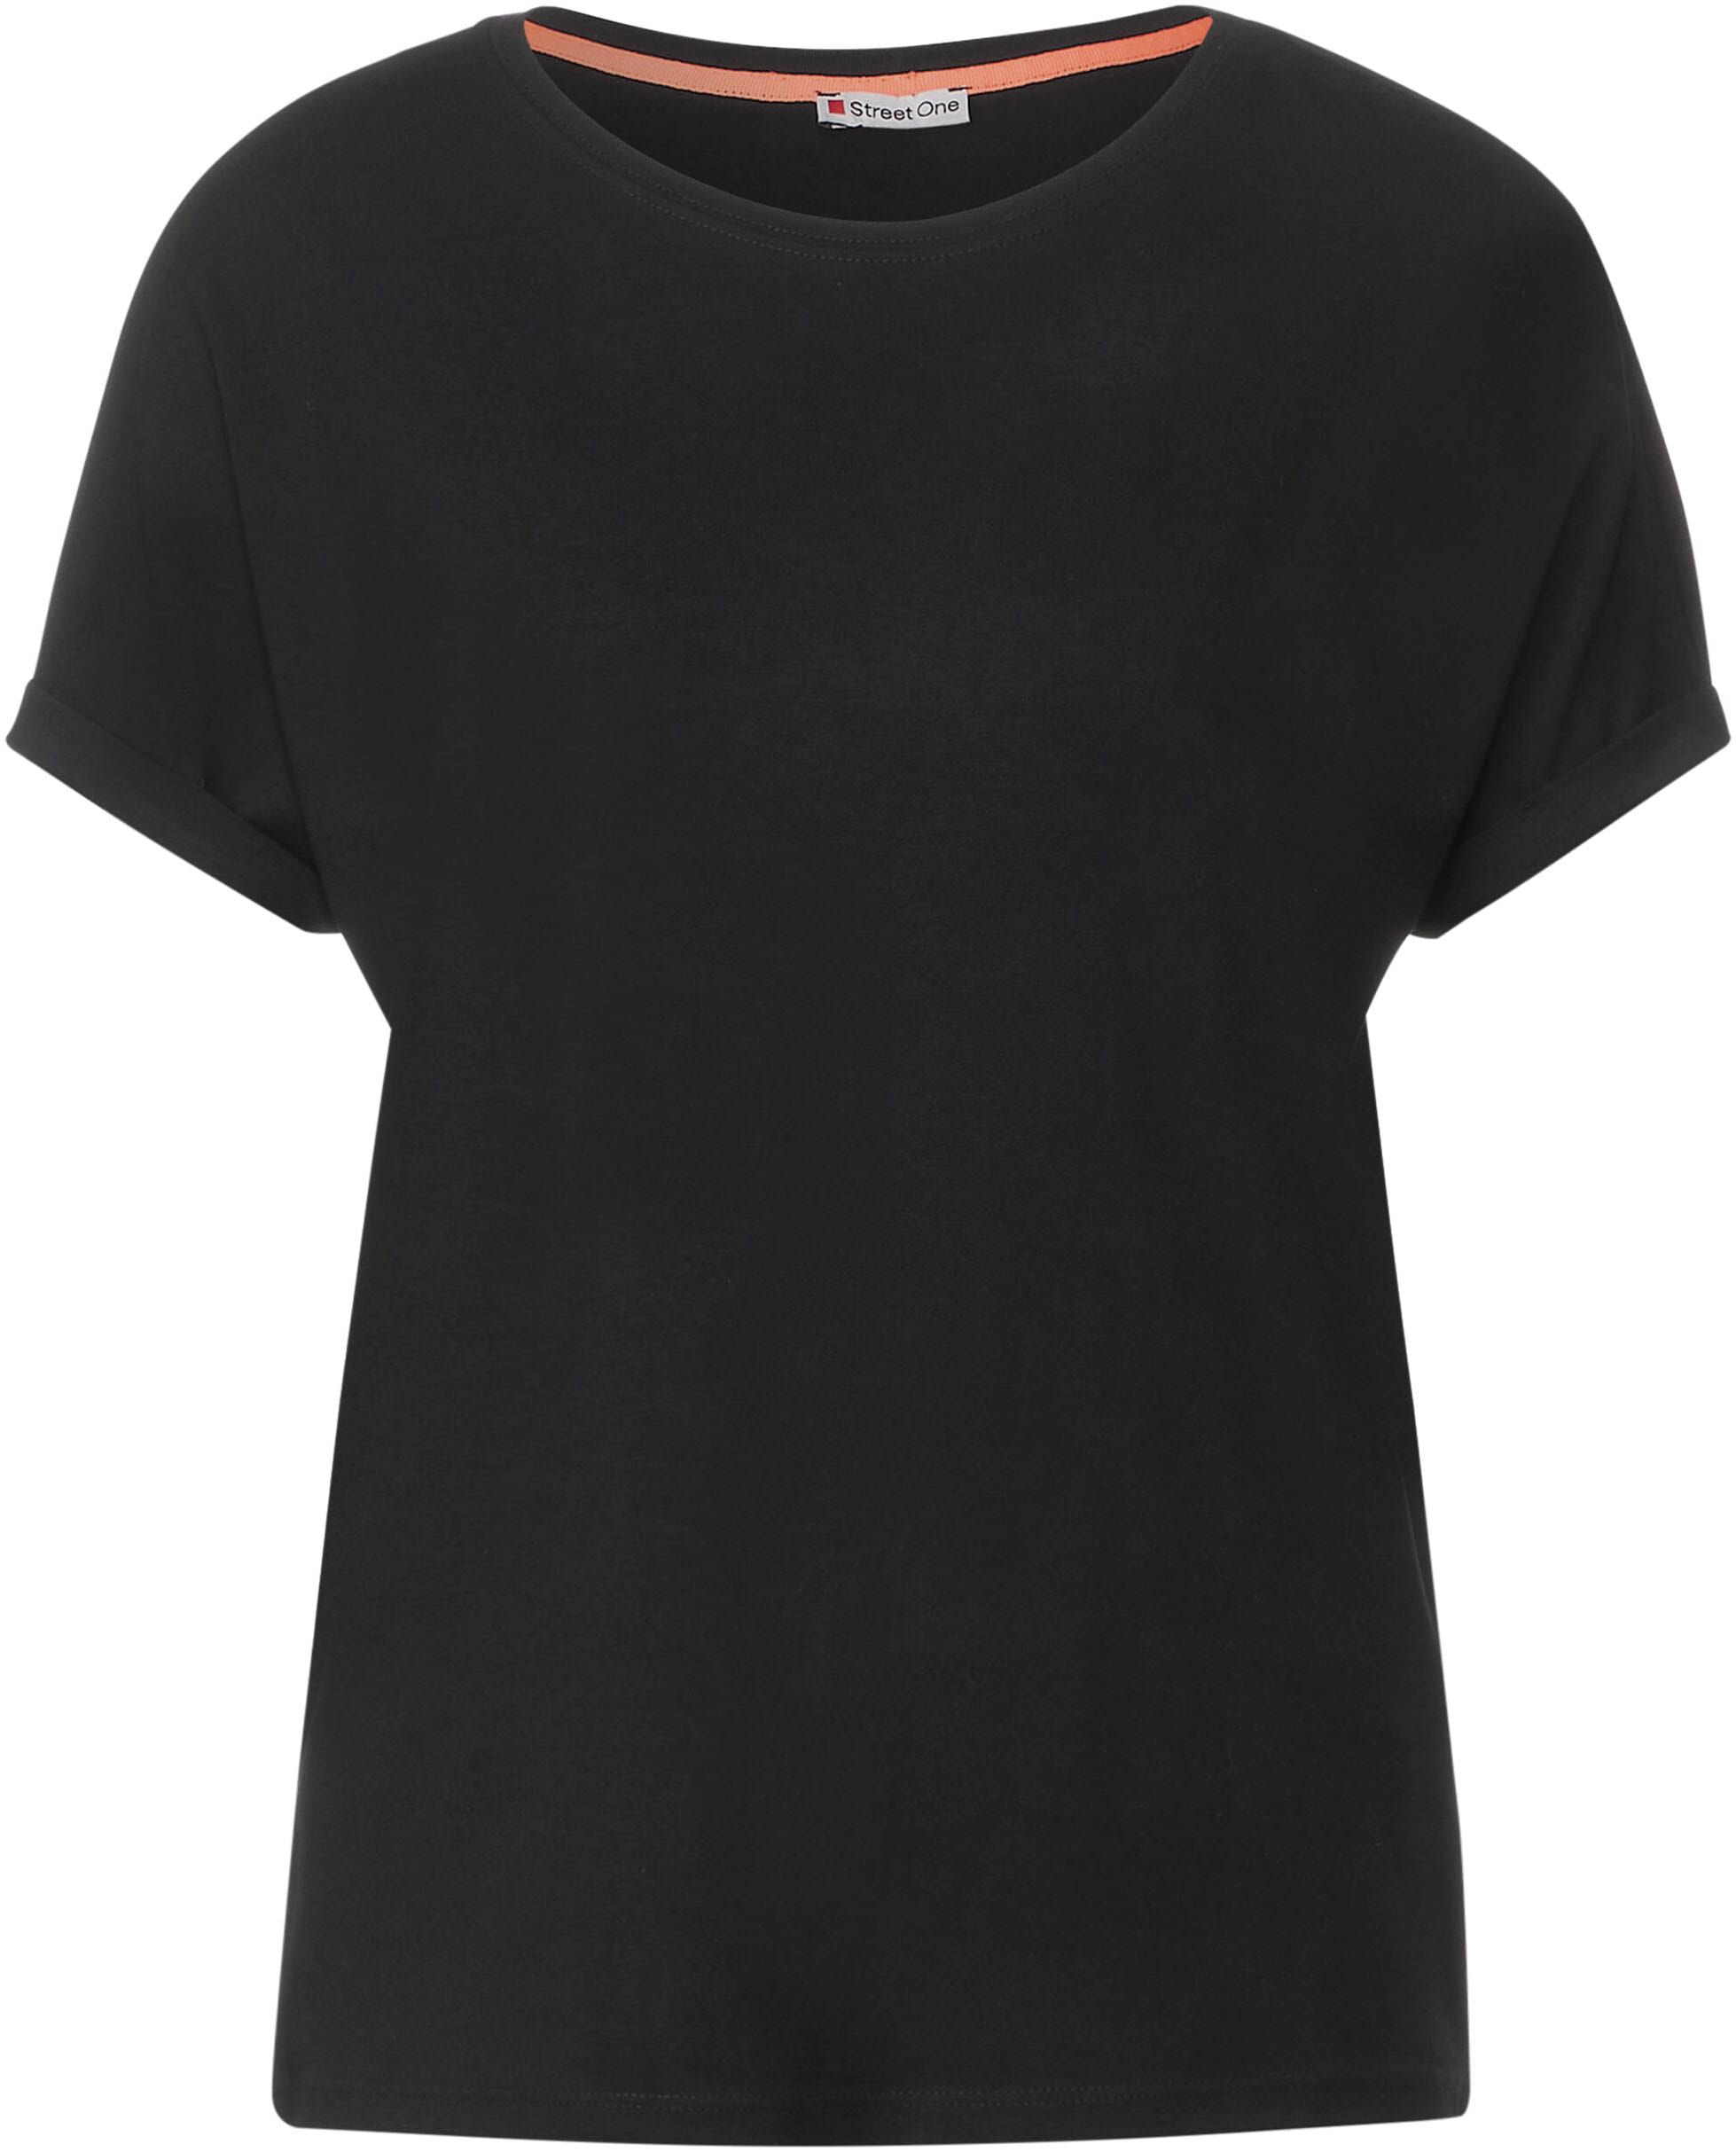 STREET ONE T-Shirt, im Style Crista für bestellen | BAUR